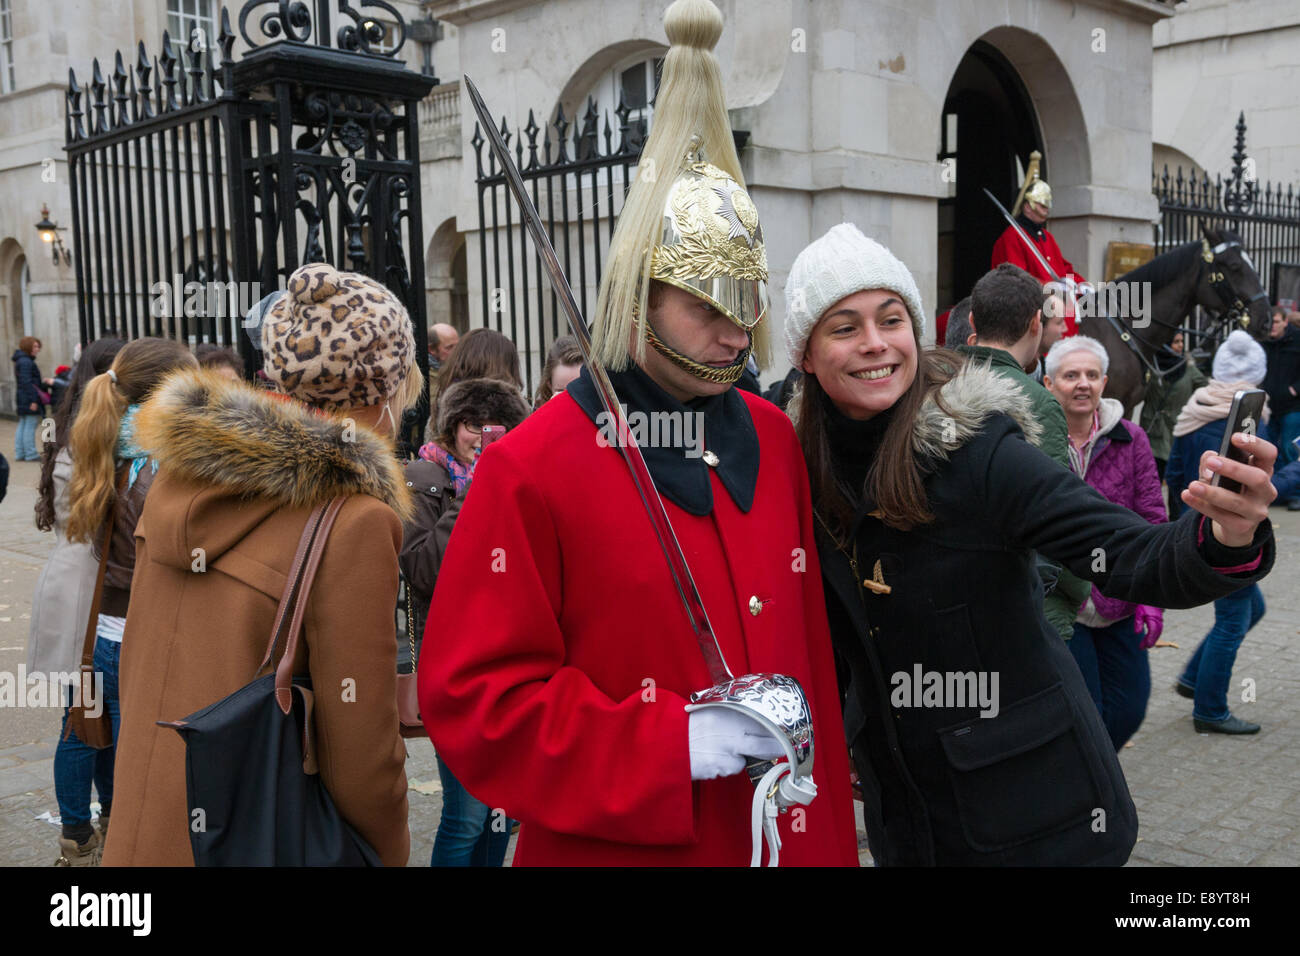 Prendre une femme avec un membre de selfies le Household Cavalry Regiment, gardiens de la vie, qui monte la garde à l'extérieur de Horse Guards Parade, Londres, Angleterre Banque D'Images